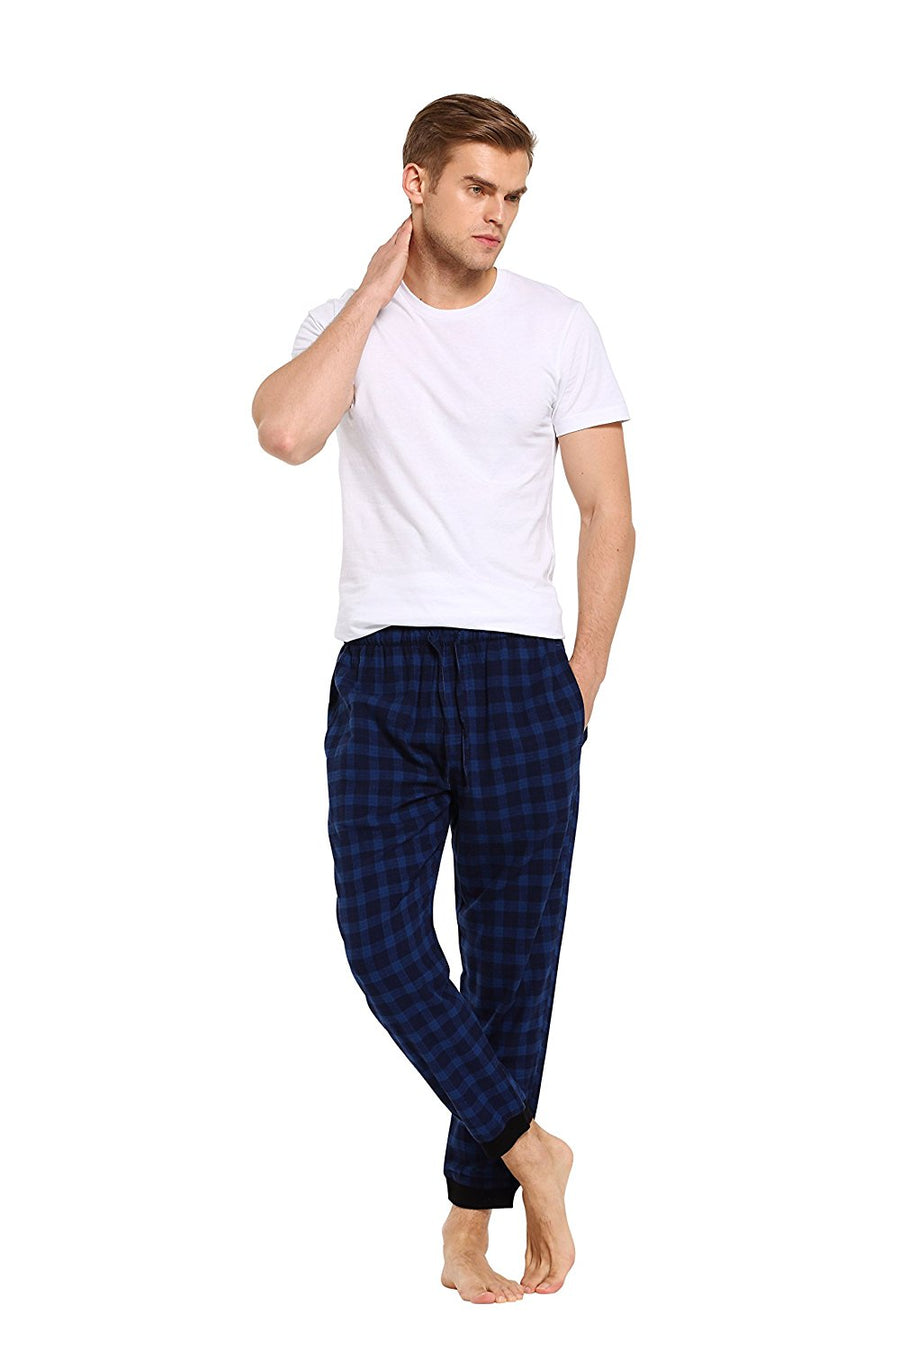 CYZ Men's 100% Cotton Flannel Jogger Pajama Lounge Pant